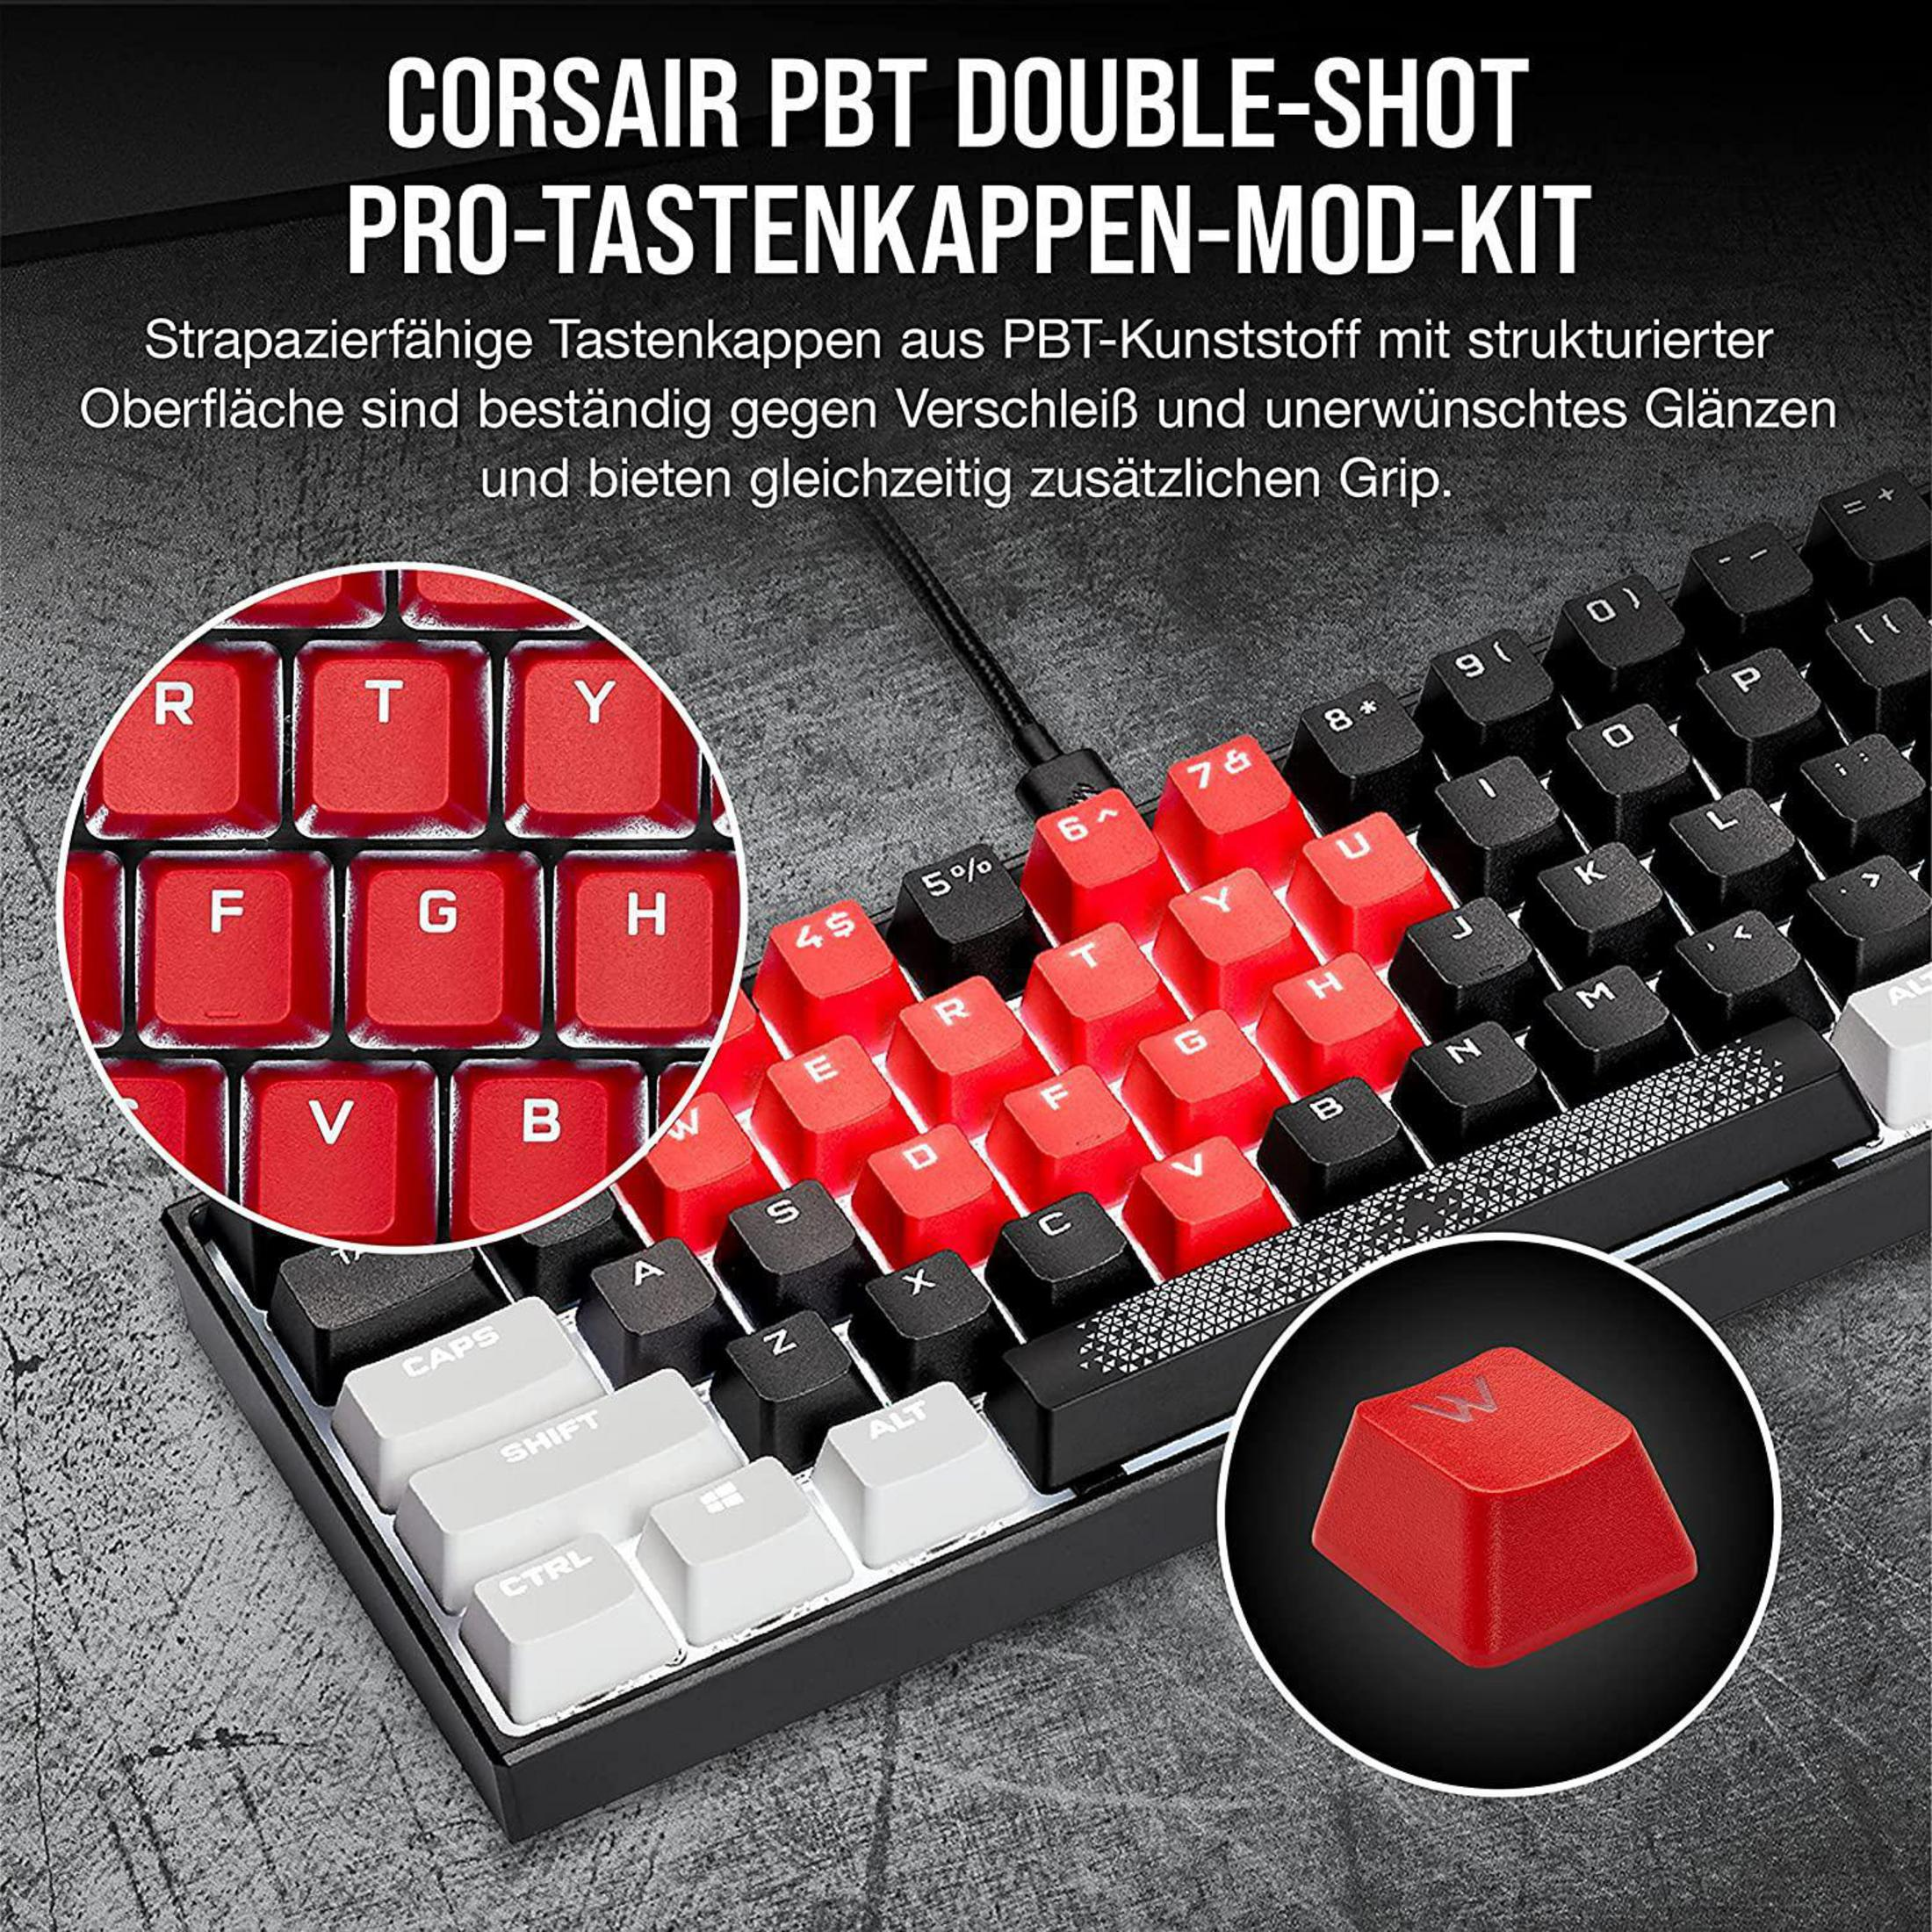 KEYCAP PBT DOUBLE-SHOT Tastatur RED Gaming K, MOD CORSAIR CH-9911020-DE PRO